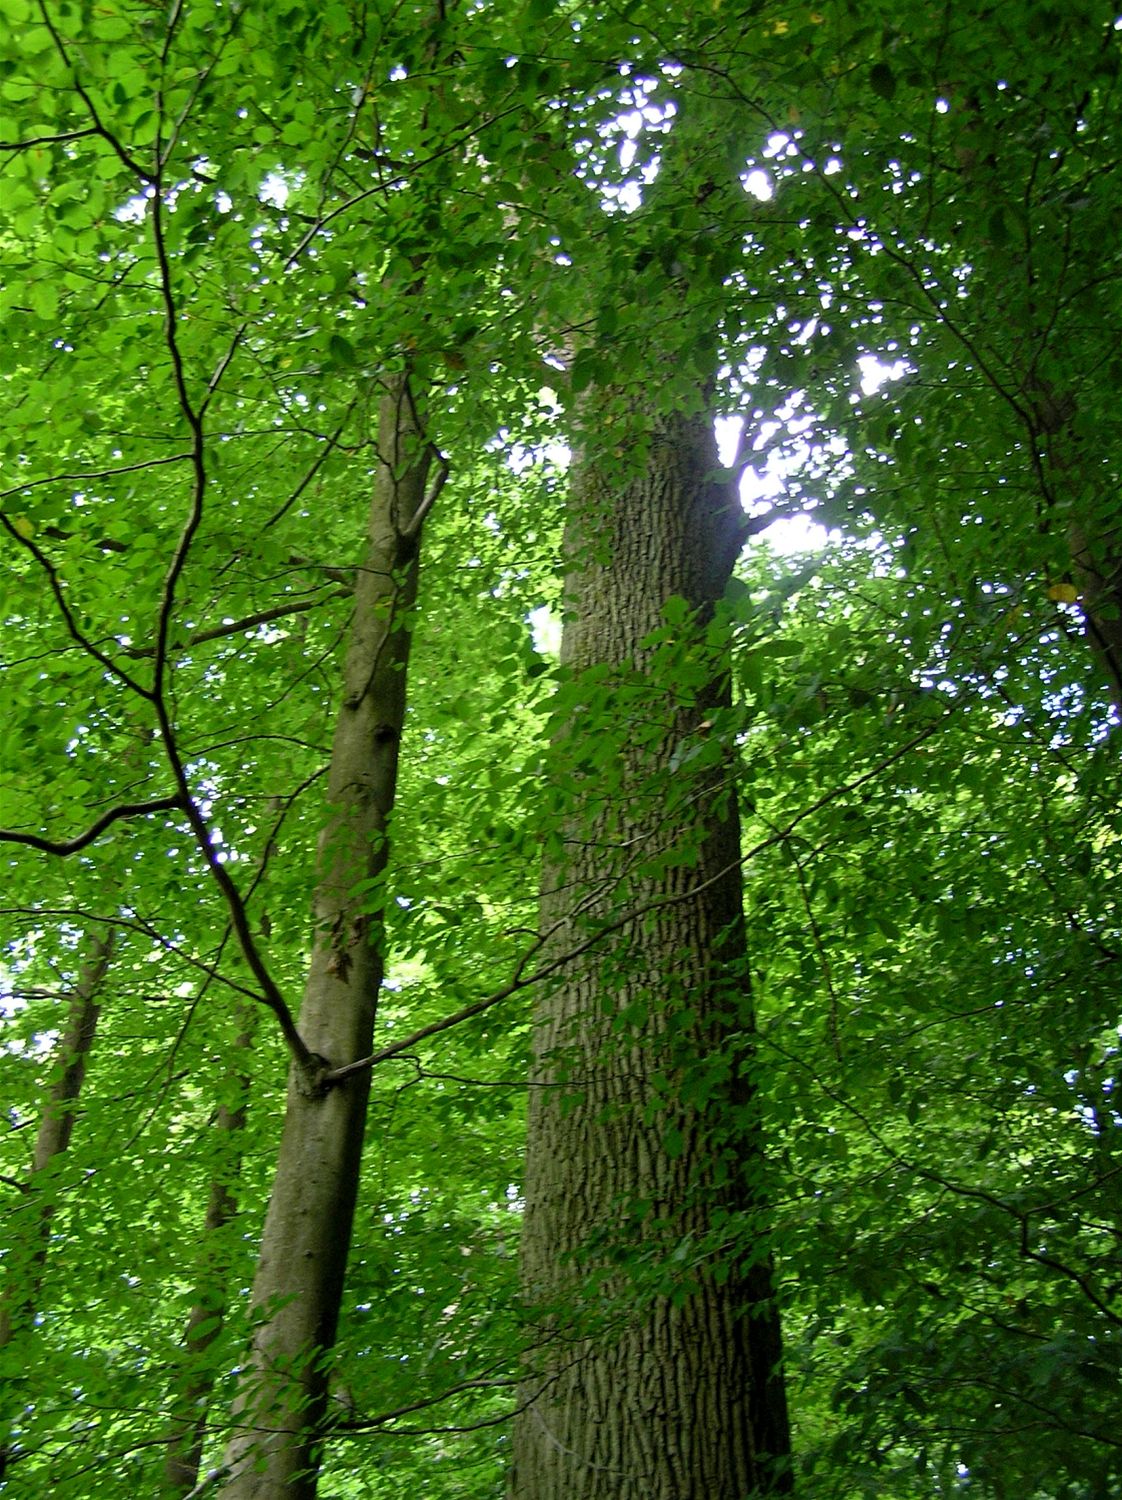 Les německého barona von Rotenhana v Bavorsku patří k nejkrásnějším v Evropě.